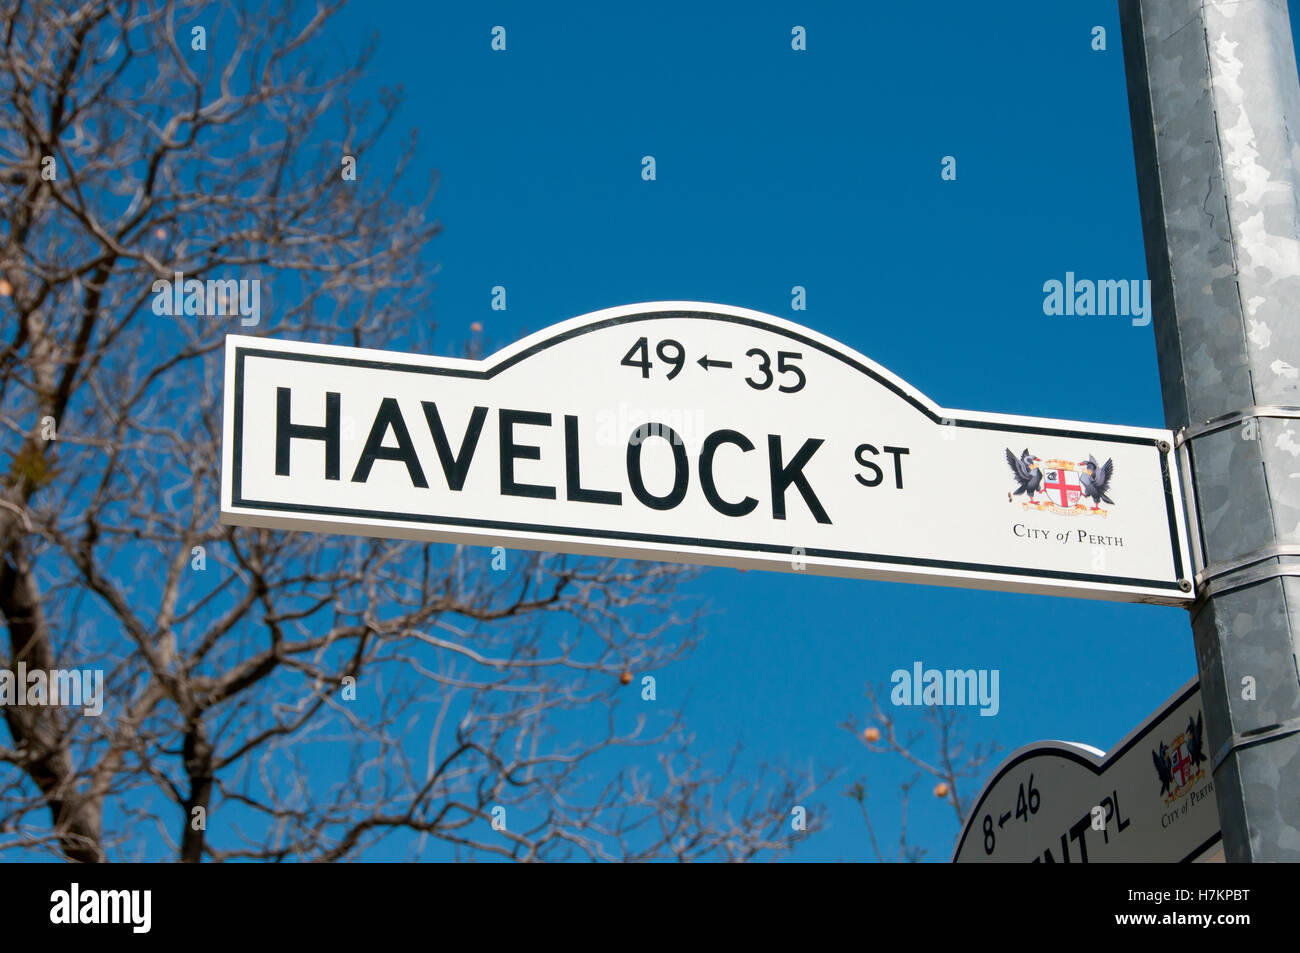 Havelock Straße Zeichen - Perth - Australien Stockfoto